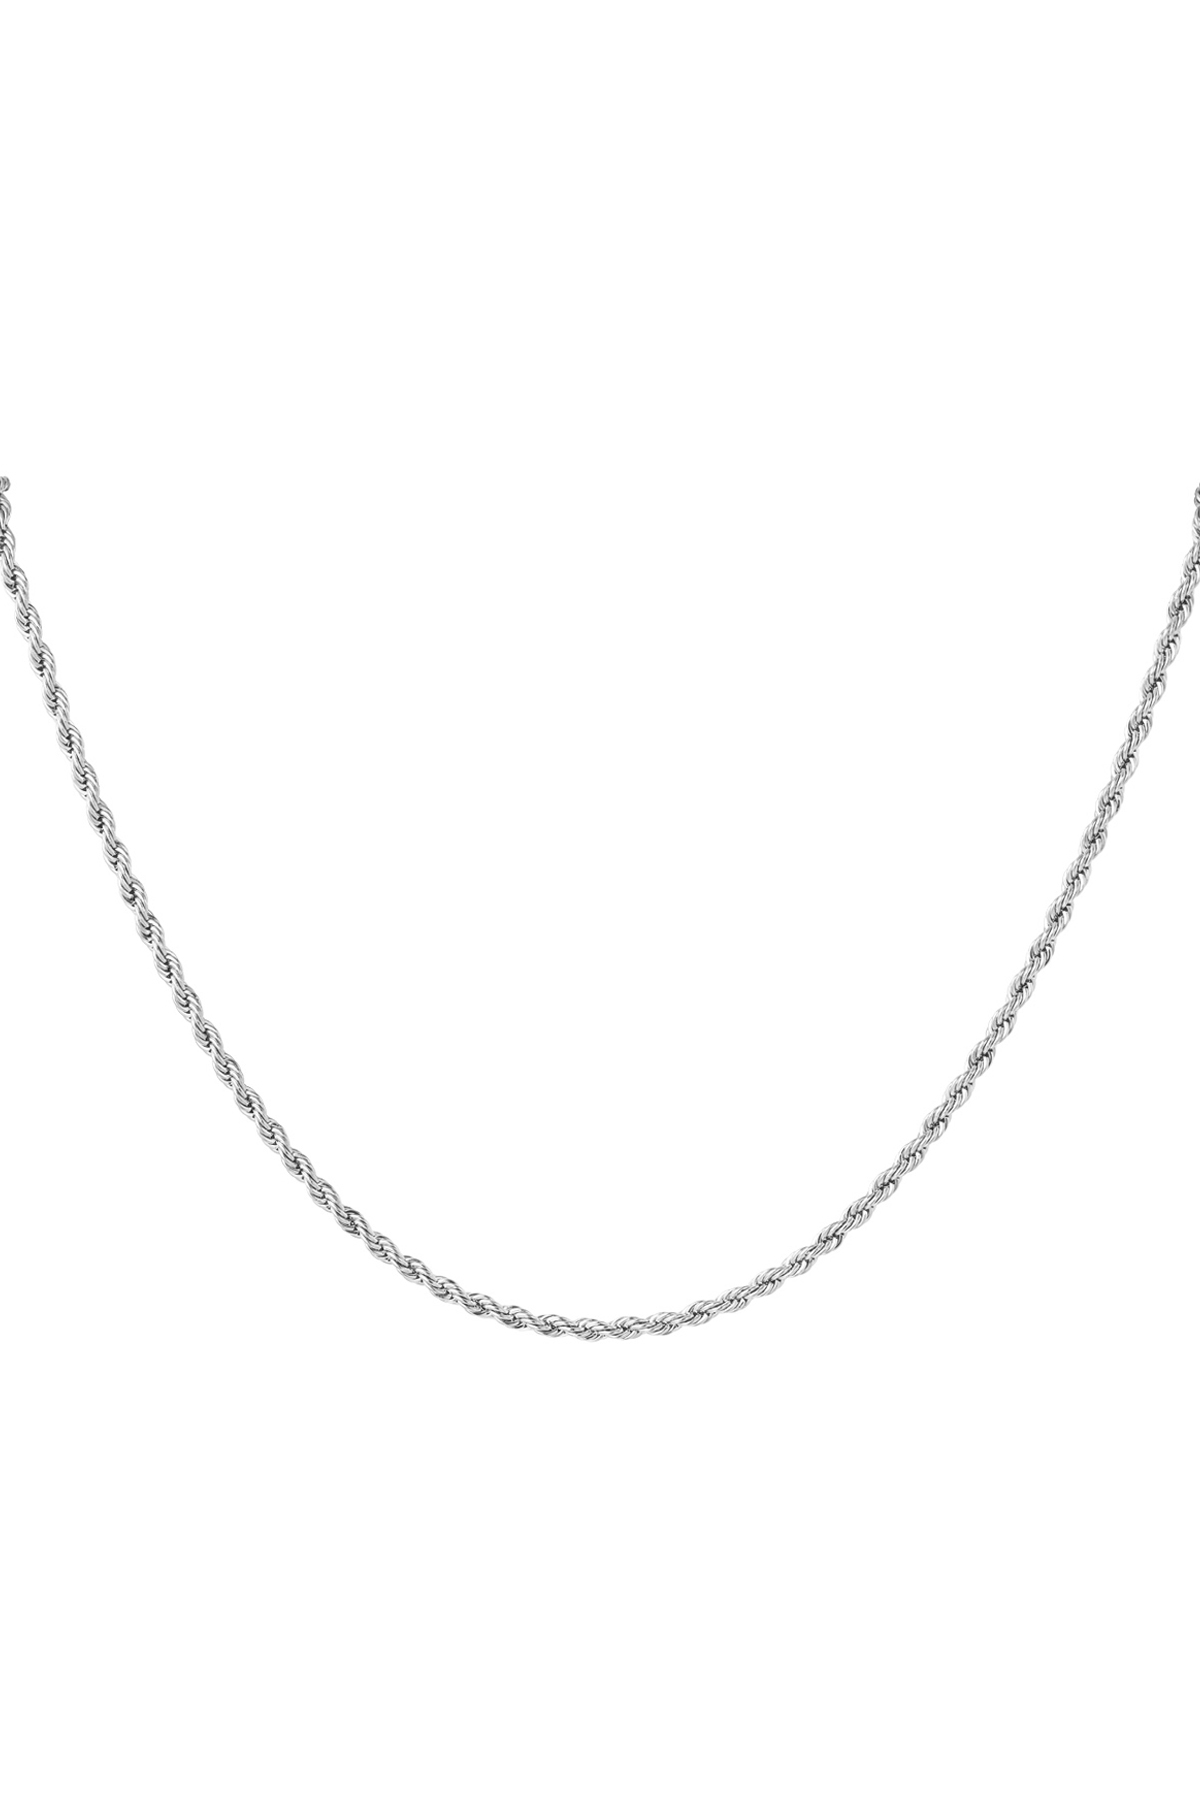 Unisex-Halskette fein gedreht - Silber